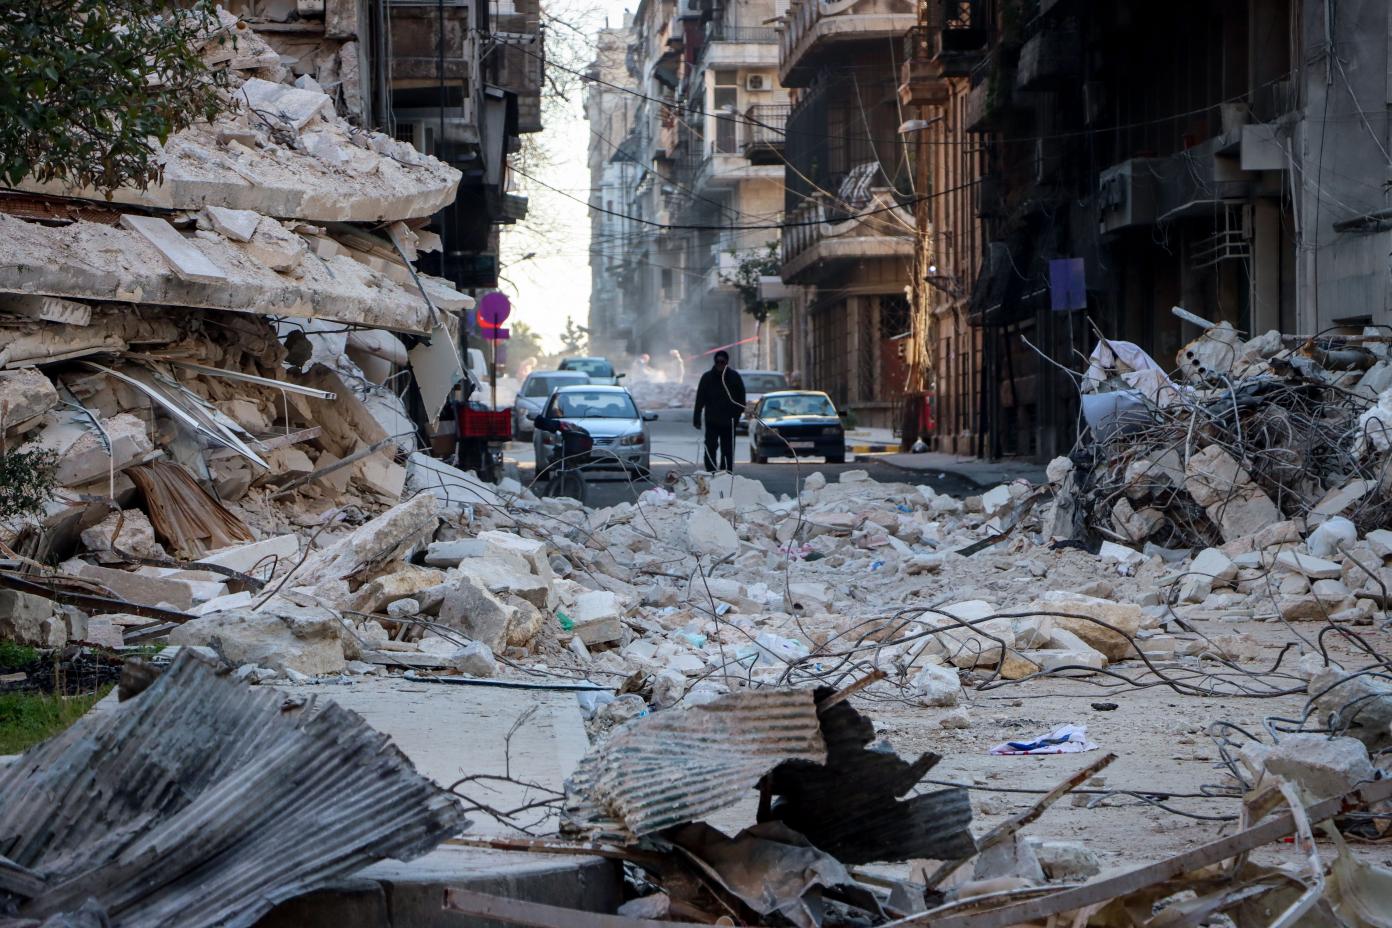 Erdbebenschäden in Syrien